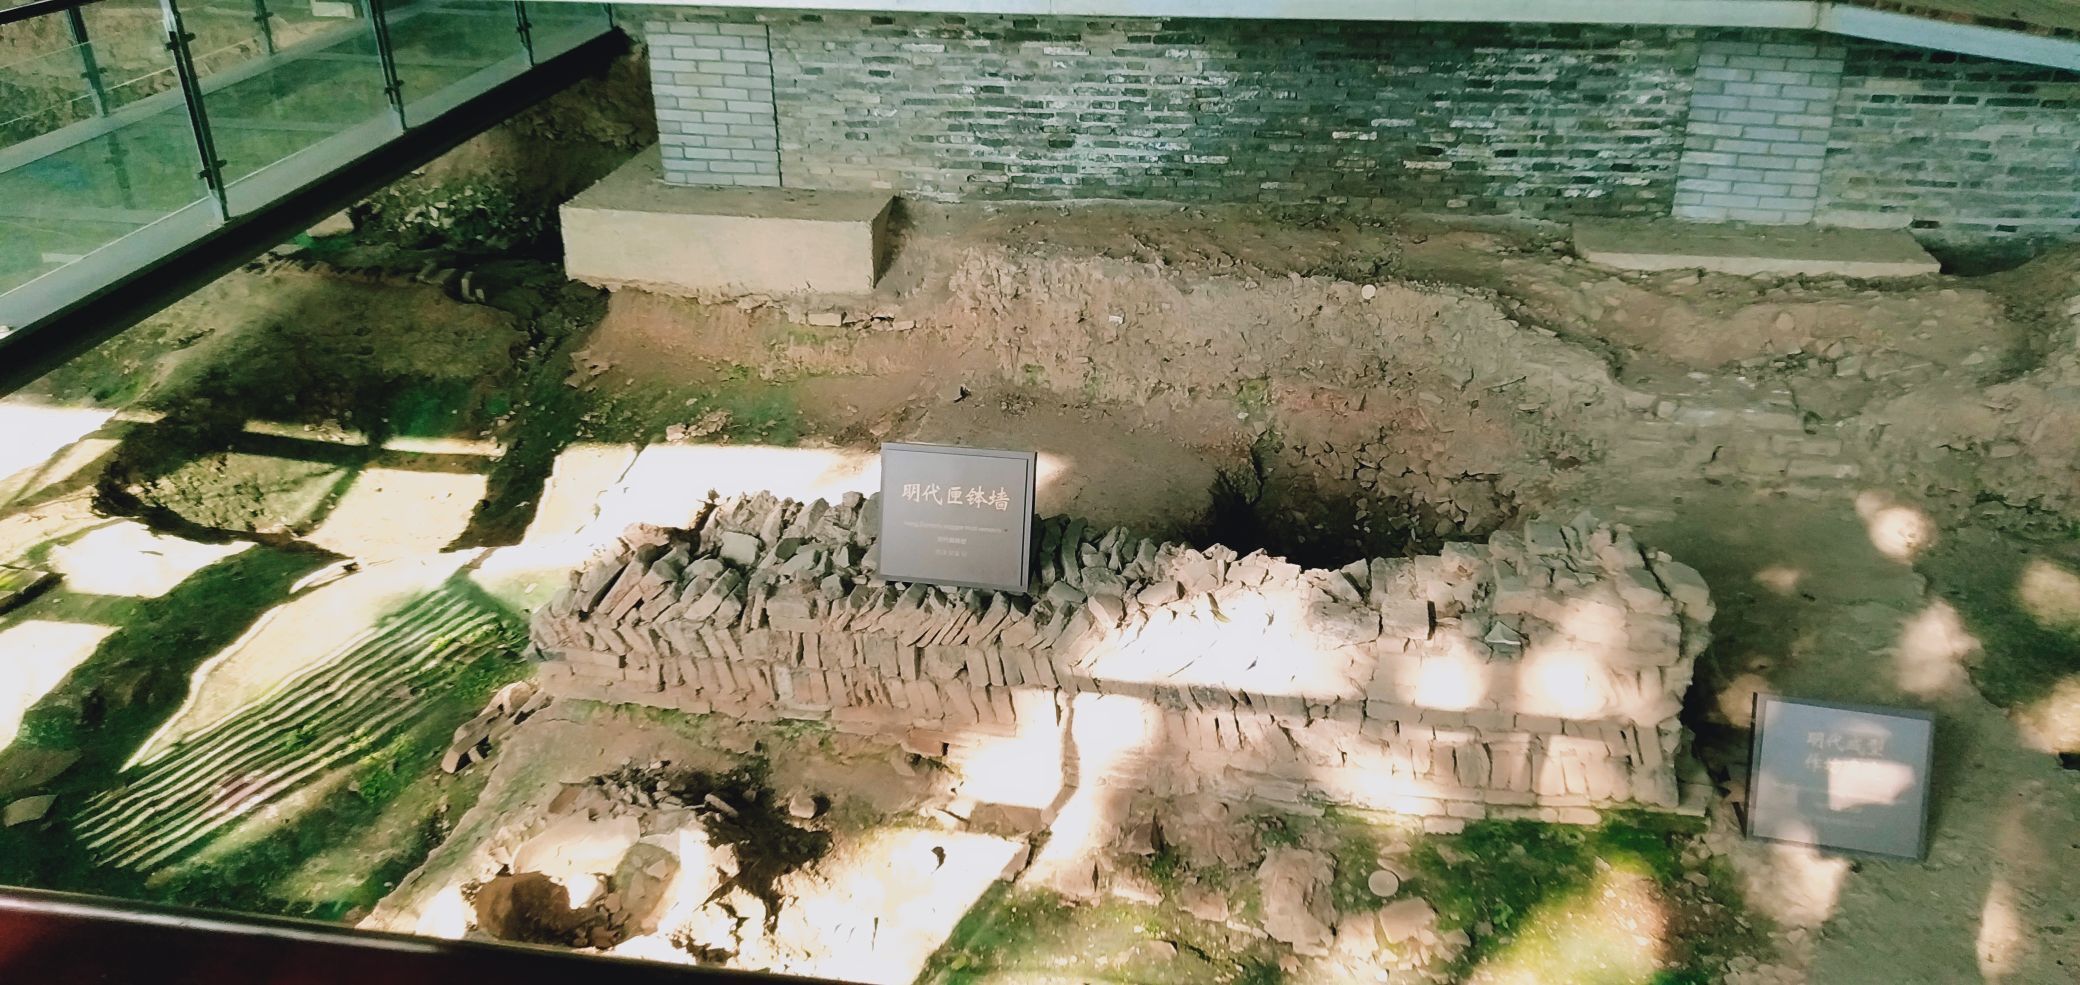 景德镇御窑厂国家考古遗址公园位于江西景德镇珠山区珠山中路187号